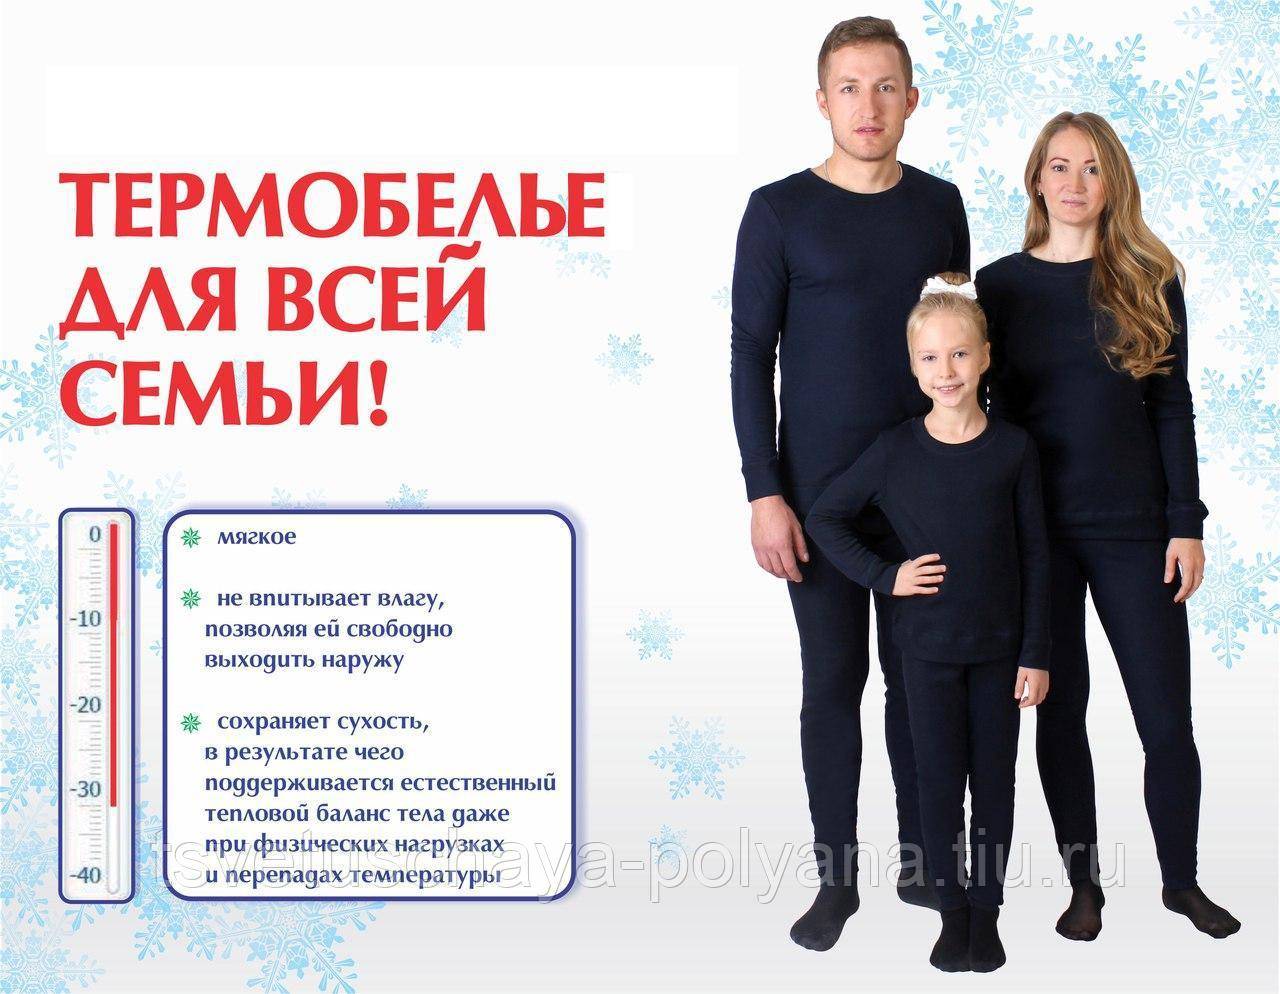 Недорогое, но качественное термобелье: 14 комплектов до 1500 рублей для женщин, мужчин и детей